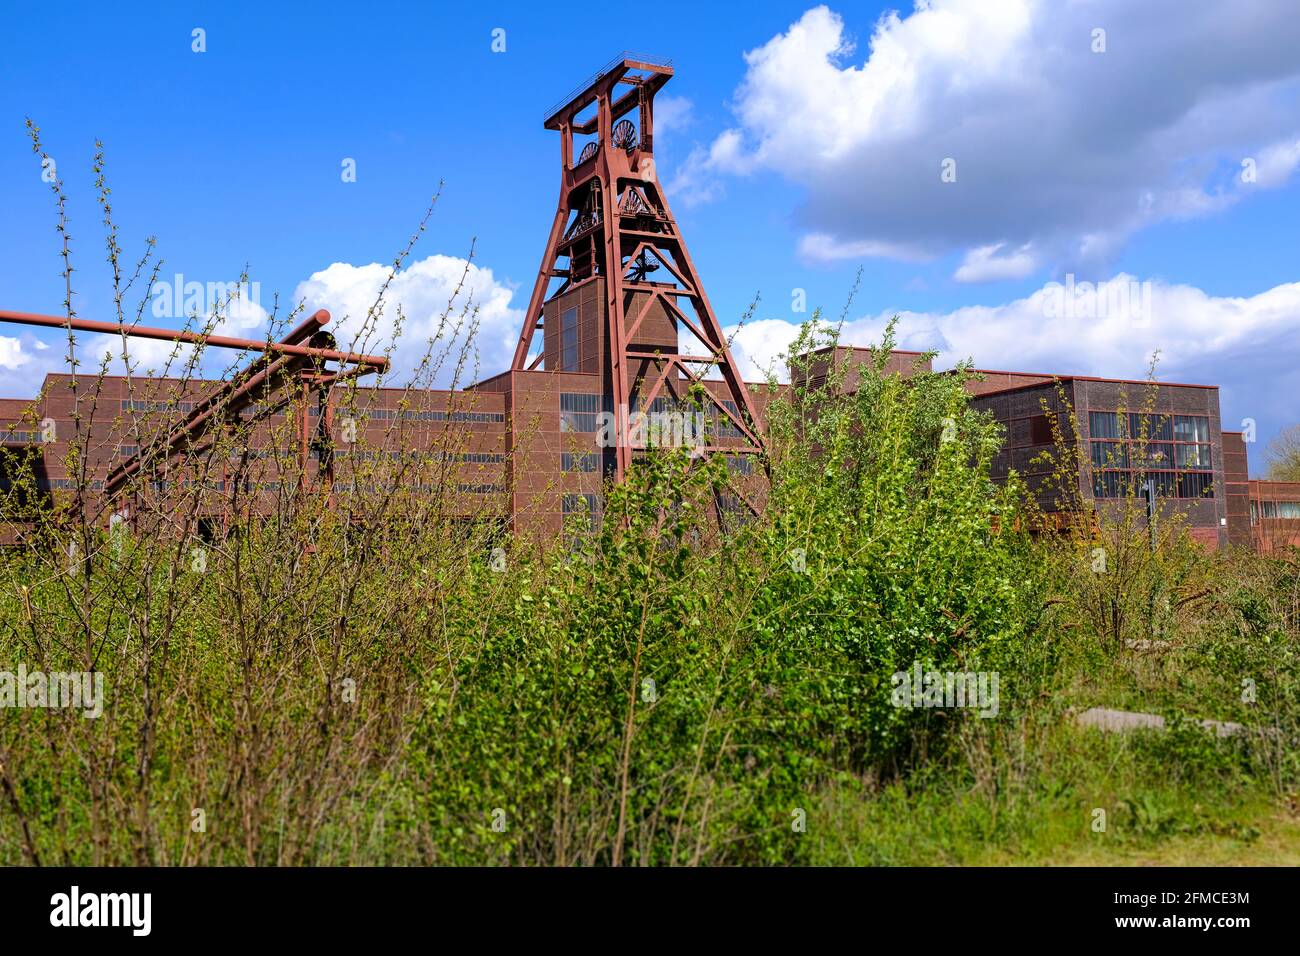 07.05.2021, Essen, Nordrhein-Westfalen, Deutschland - Foerderturm der Zeche Zollverein in Essen Stock Photo